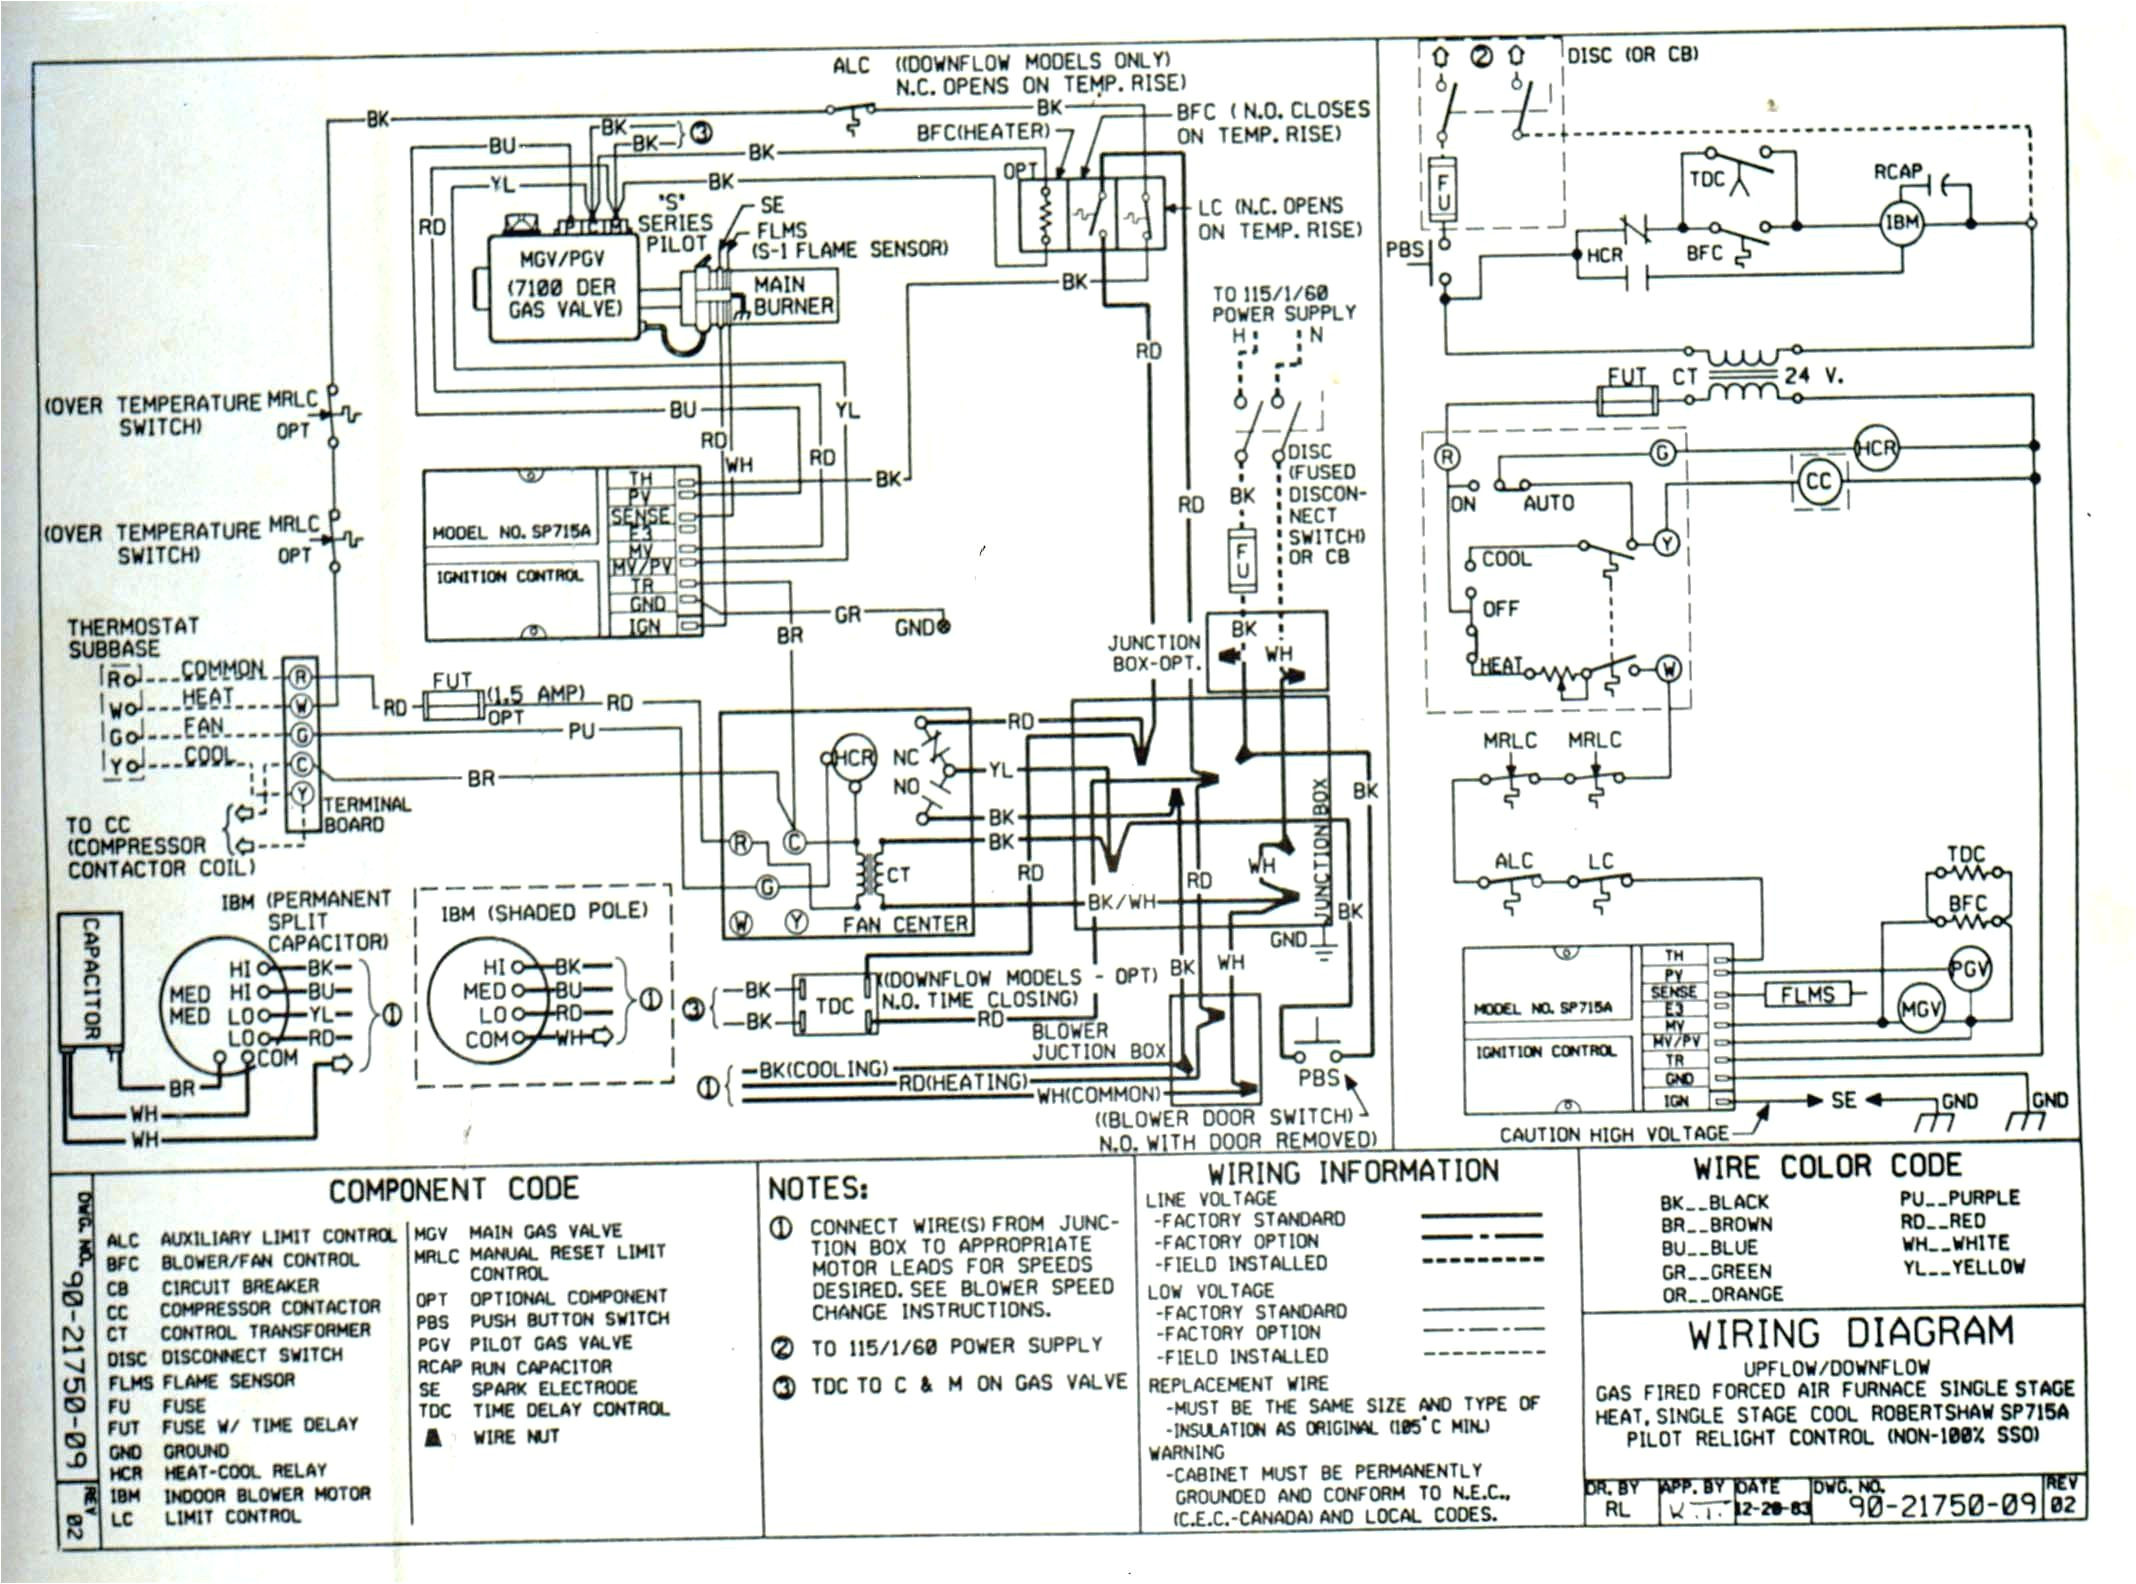 trane wiring schematics